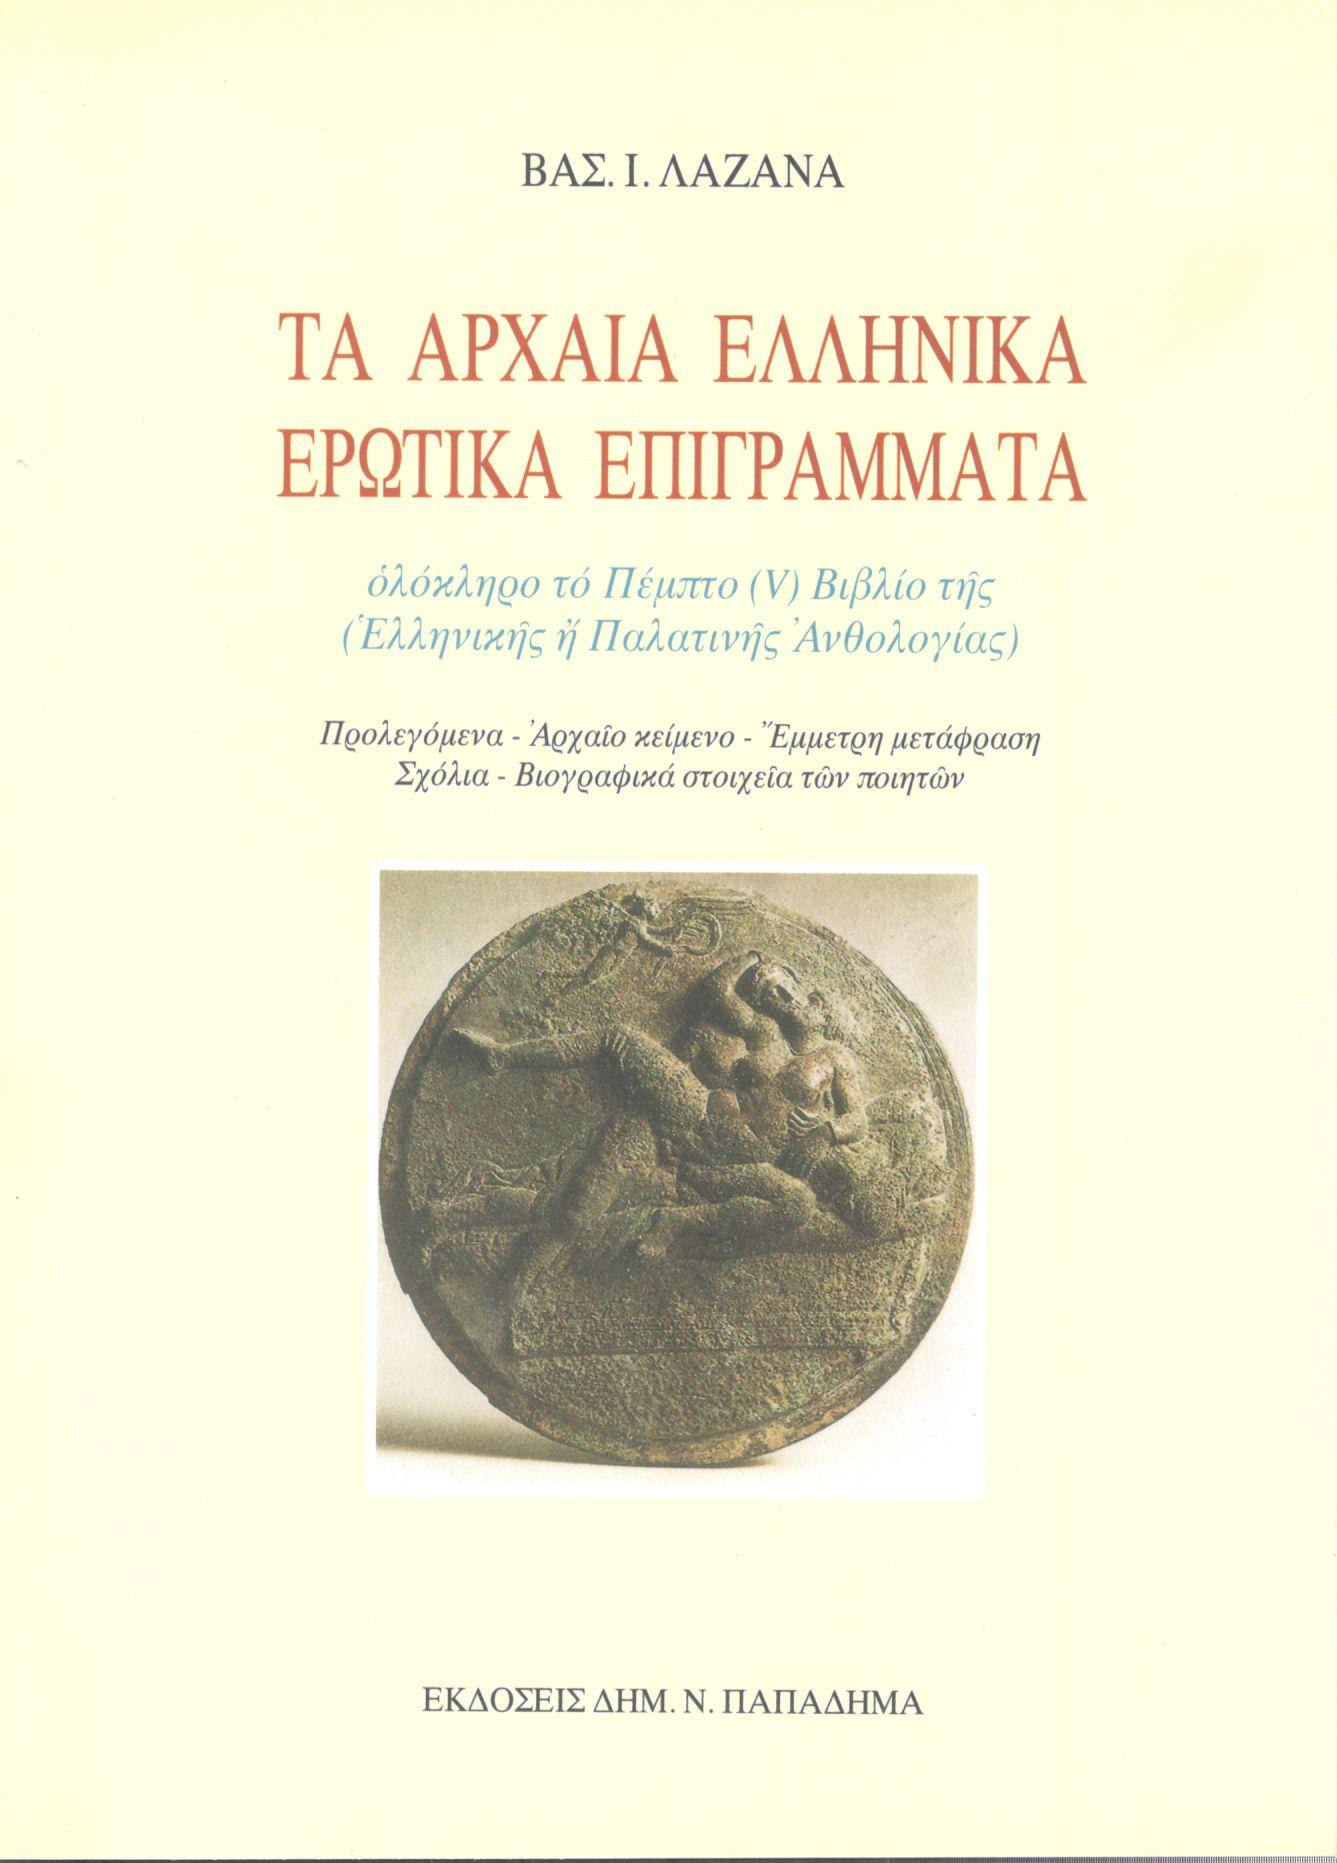 Τα αρχαία ελληνικά ερωτικά επιγράμματα. Ολόκληρο το Πέμπτο [V] βιβλίο της Ελληνικής ή Παλατινής Ανθολογίας